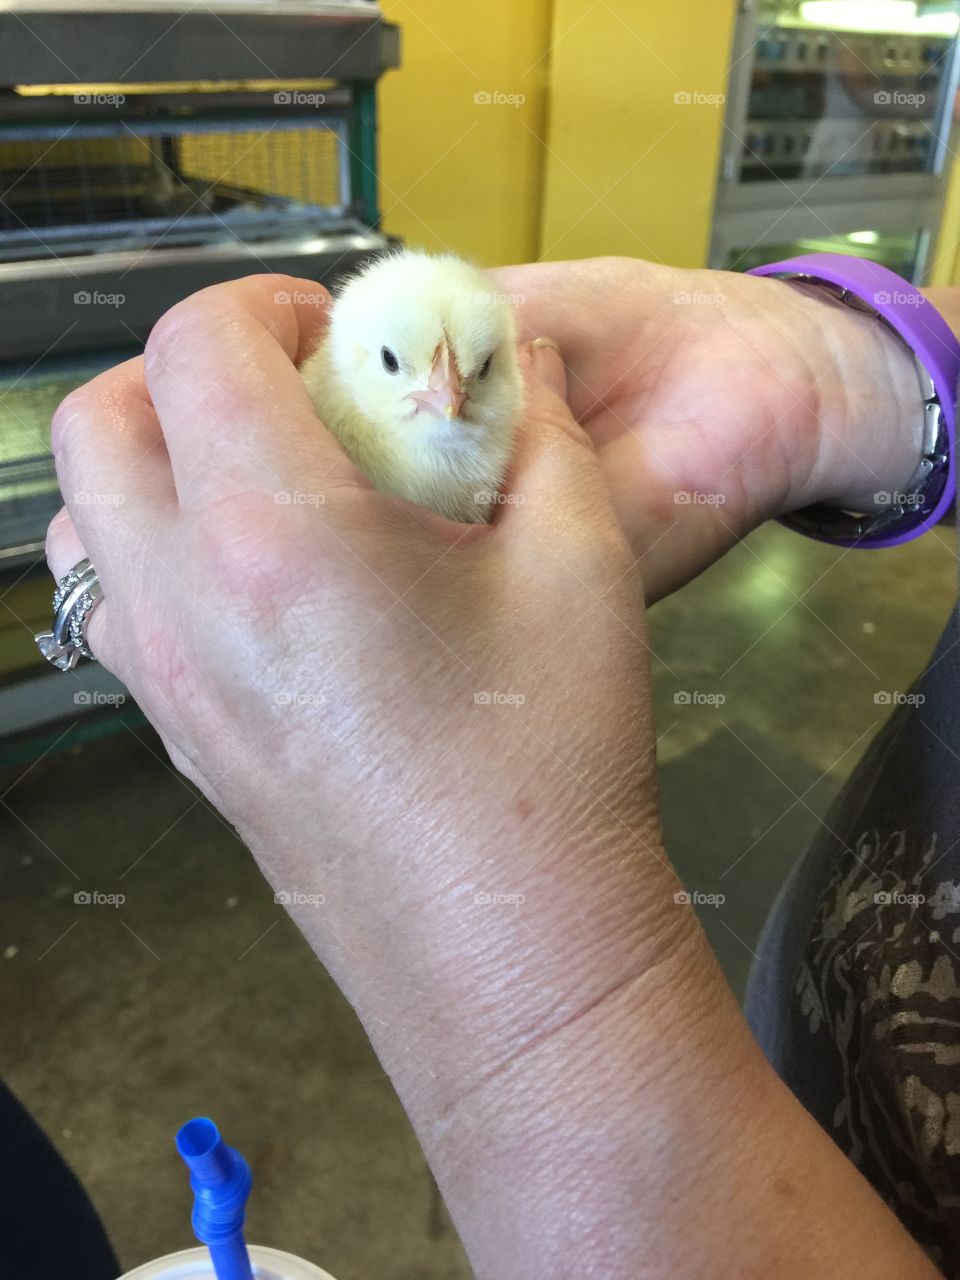 Handy women
Raising chicks
Newborn chick